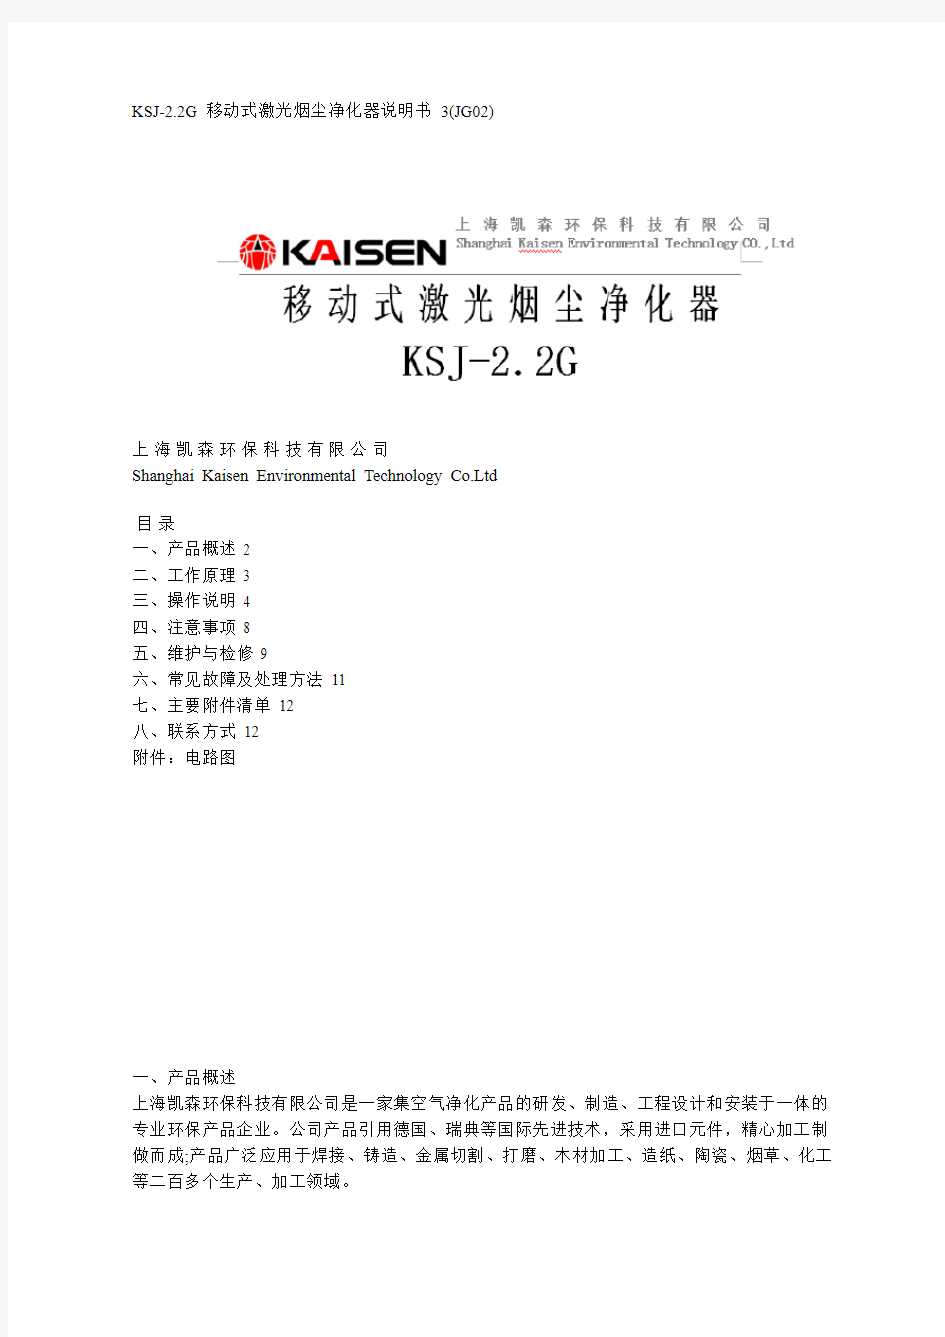 KSJ-2.2G 移动式激光烟尘净化器说明书 3(JG02)